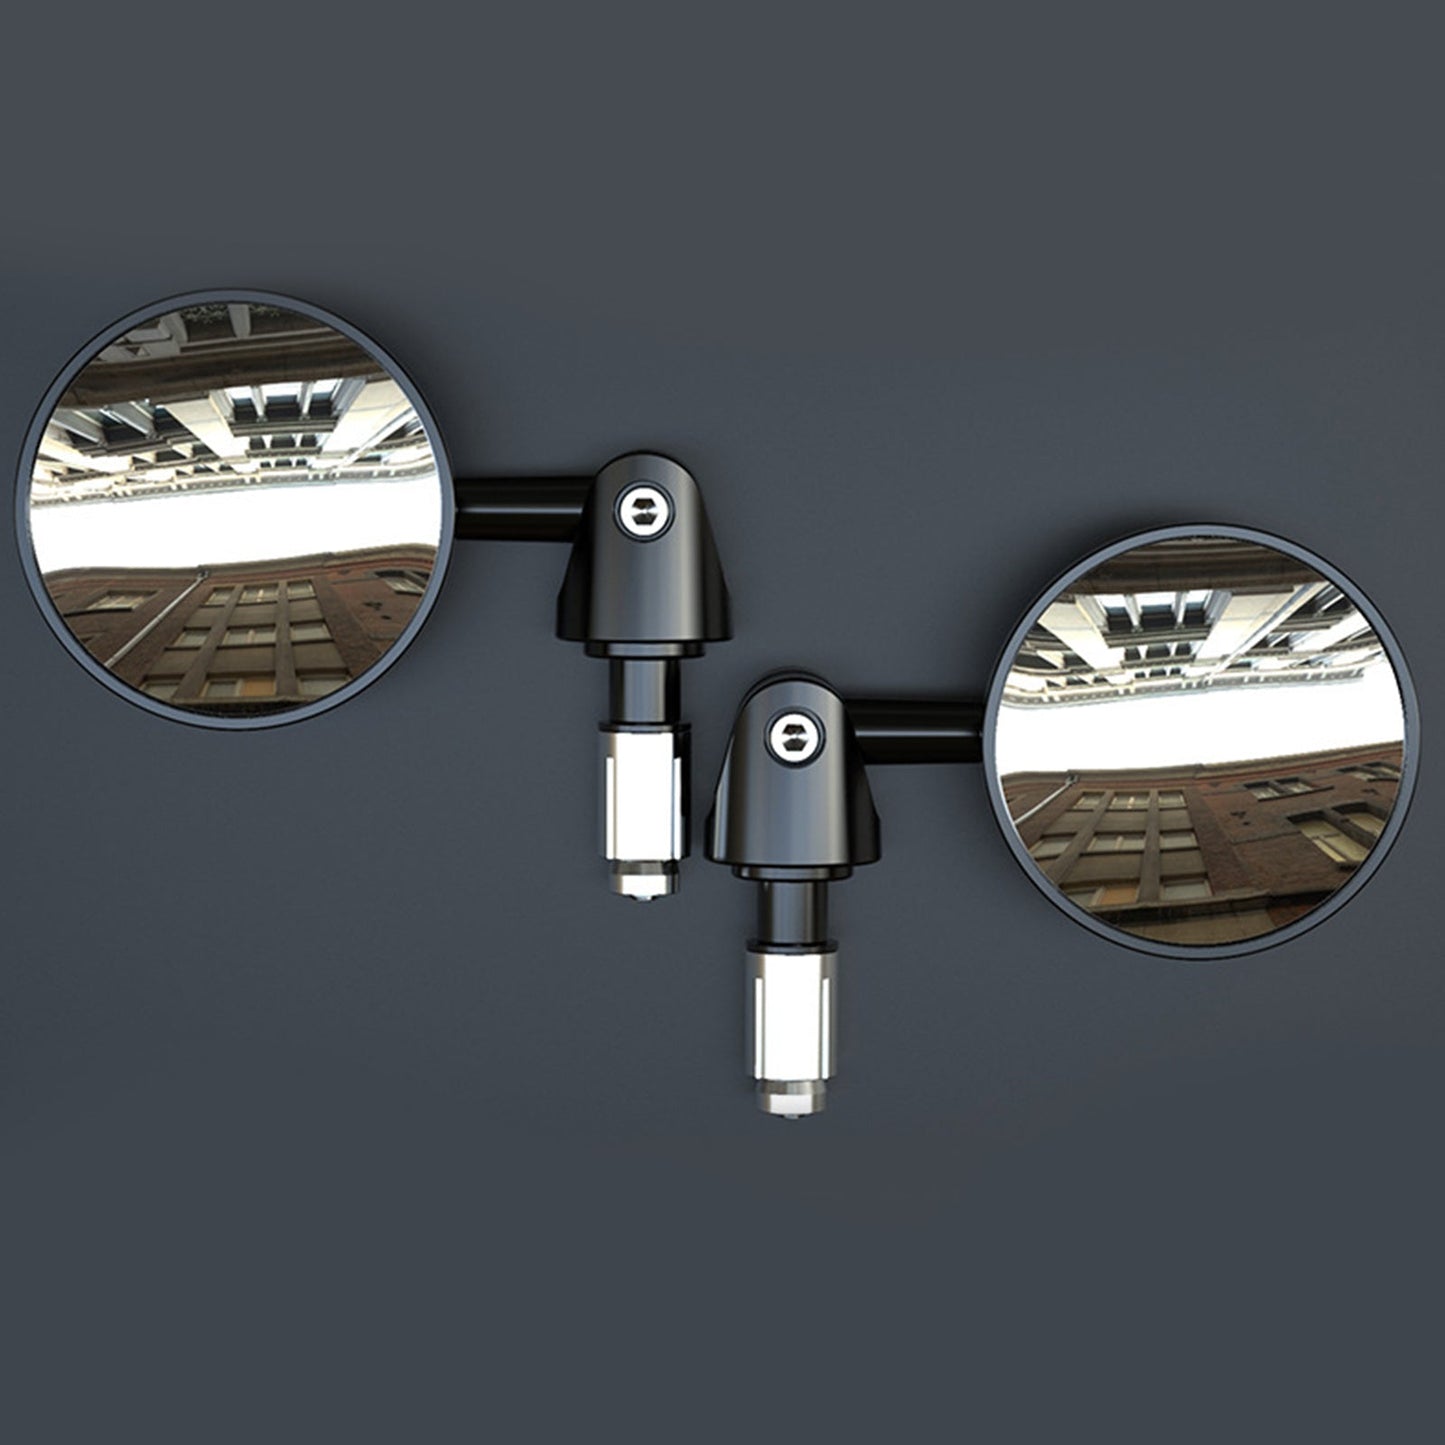 Specchietti retrovisori manubrio regolabili da 22 mm, neri, specchio CONVEX da 73 mm, ID moto 16-18 mm generici